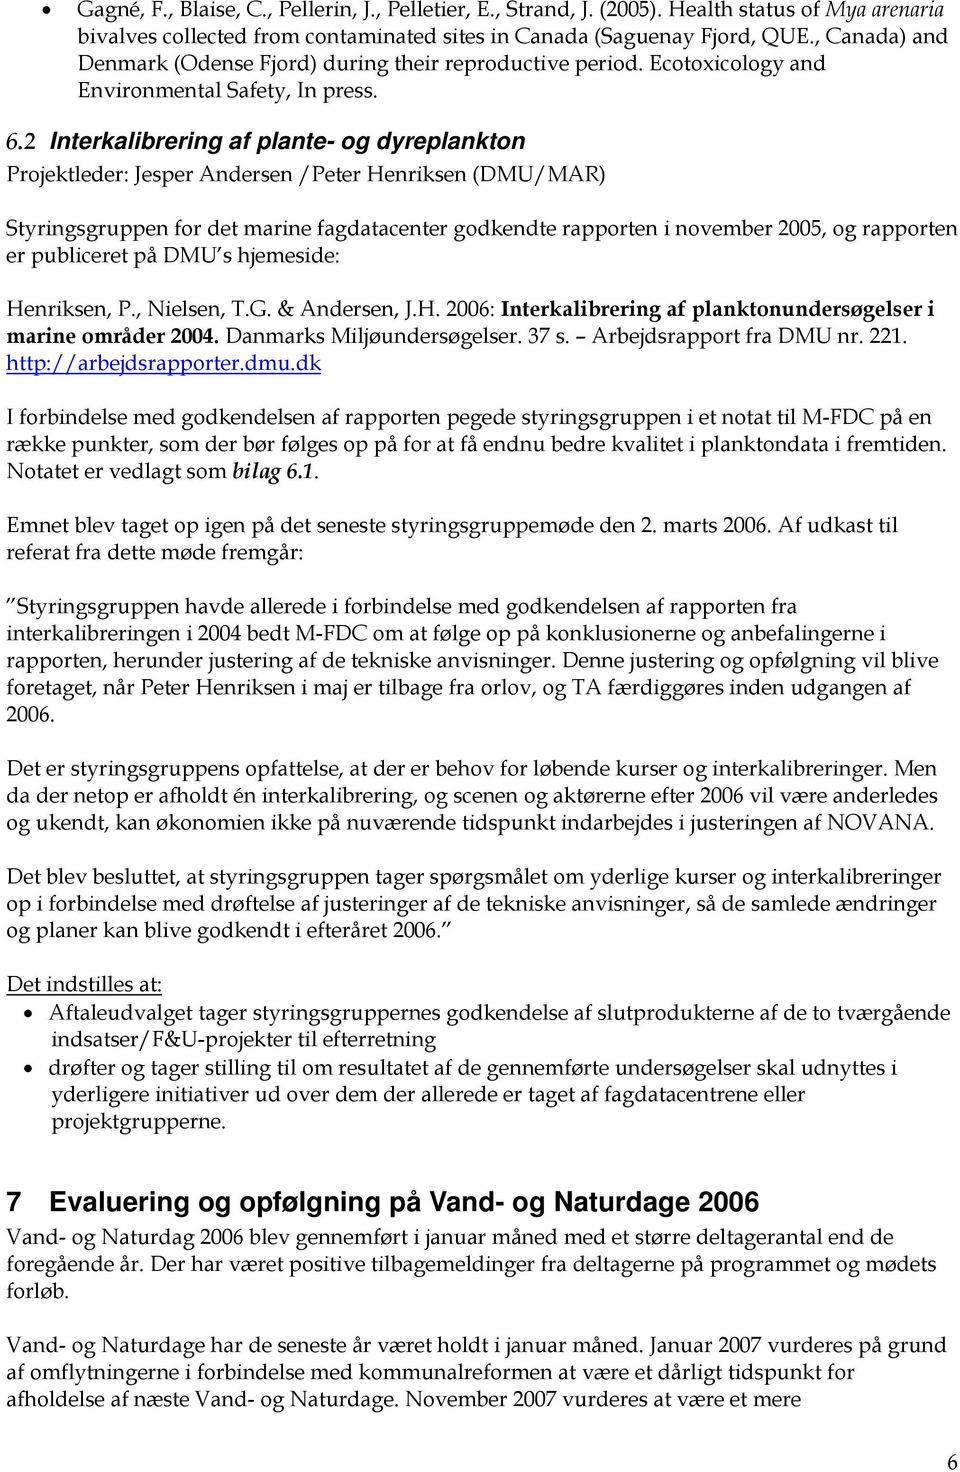 2 Interkalibrering af plante- og dyreplankton Projektleder: Jesper Andersen /Peter Henriksen (DMU/MAR) Styringsgruppen for det marine fagdatacenter godkendte rapporten i november 2005, og rapporten